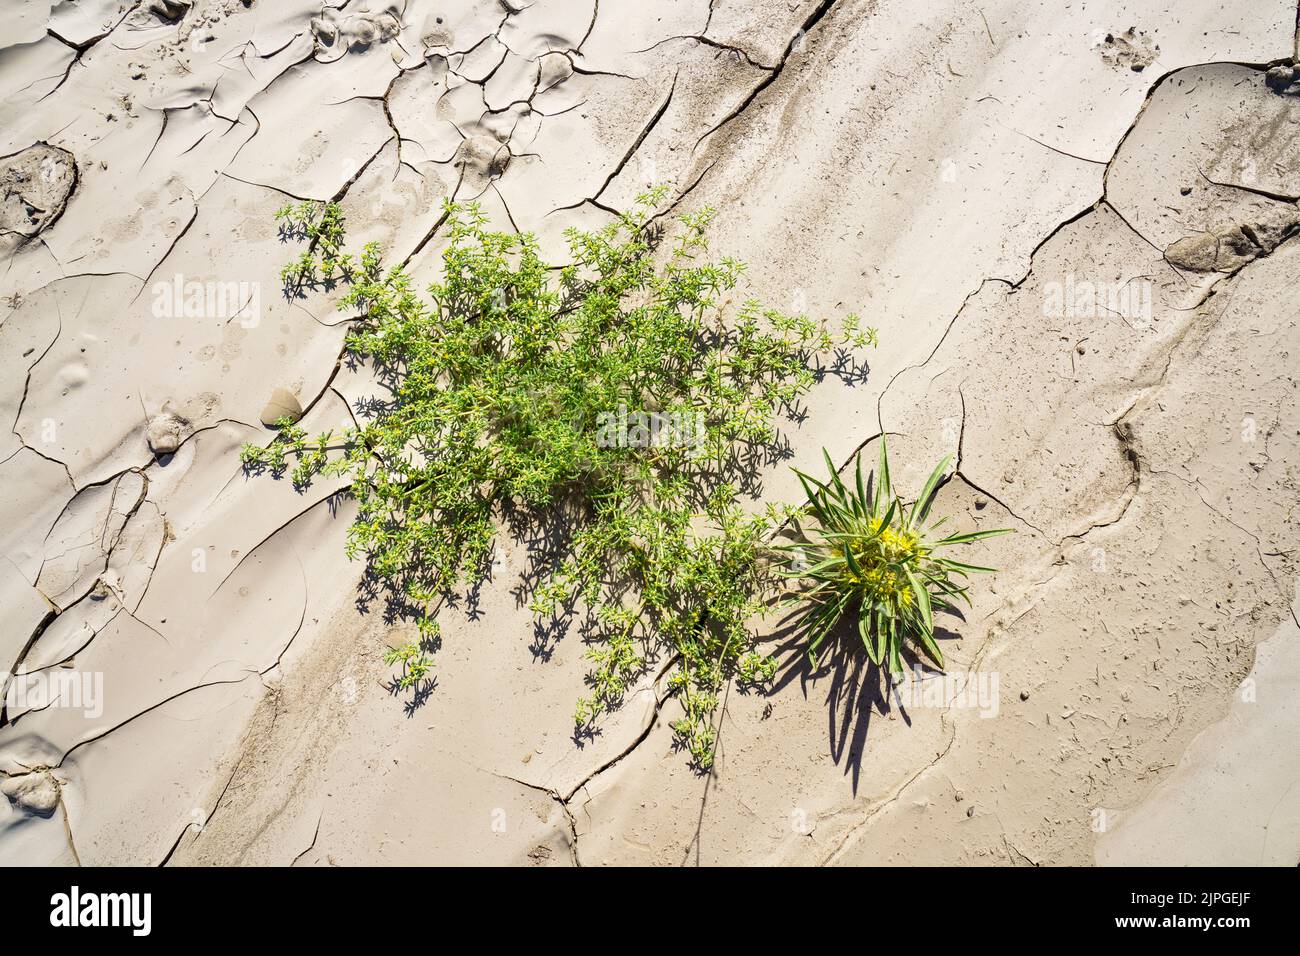 Symbolische Foto, Hoffnung, Umwelt, grüne Blume steht in trockenen Flussbett Muster. Swakop River, Namibia, Afrika Stockfoto